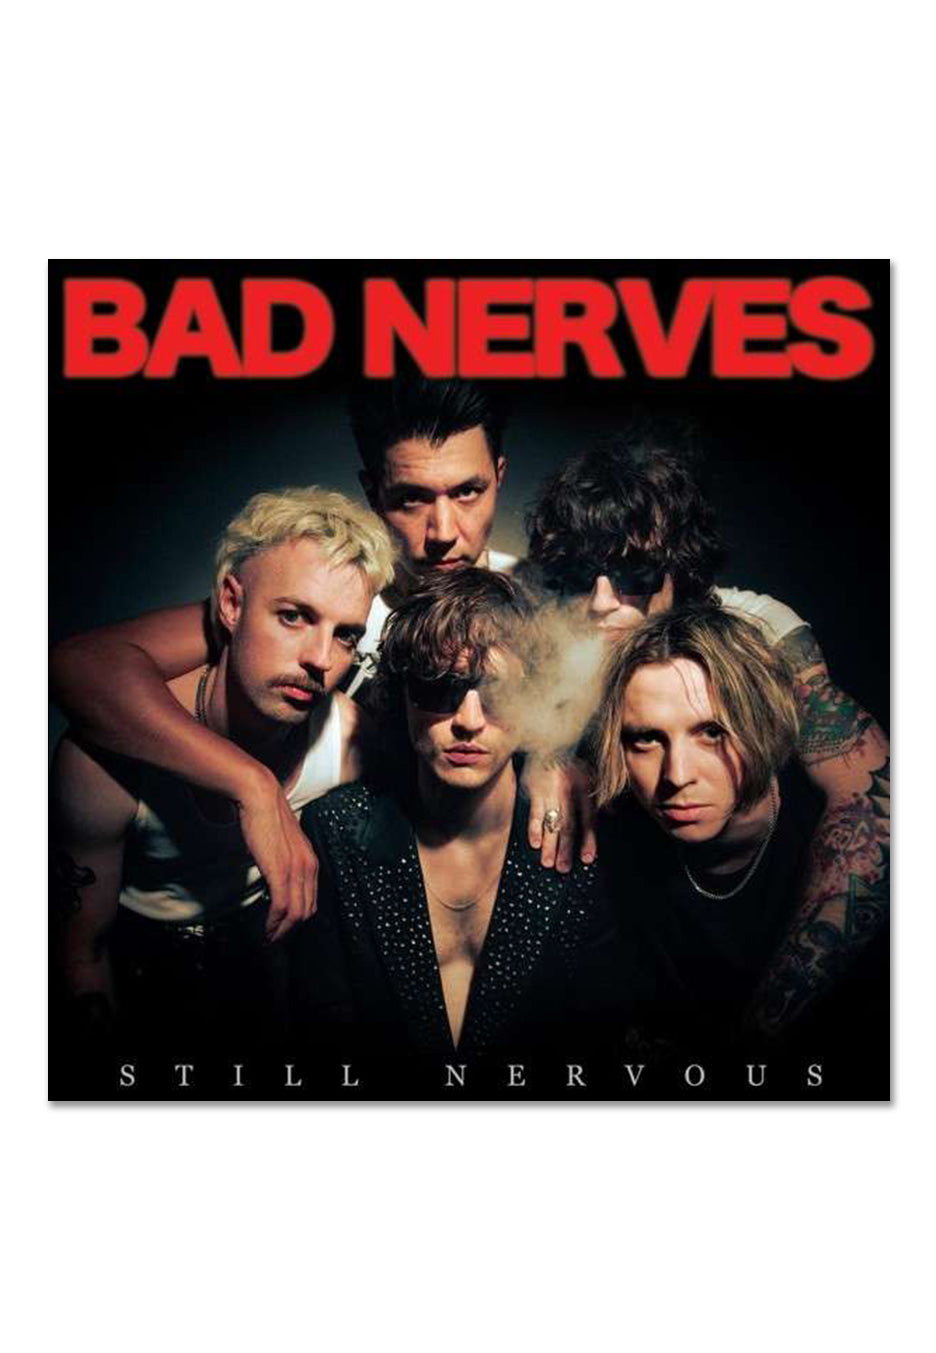 Bad Nerves - Still Nervous Ltd. Solid Red - Colored Vinyl